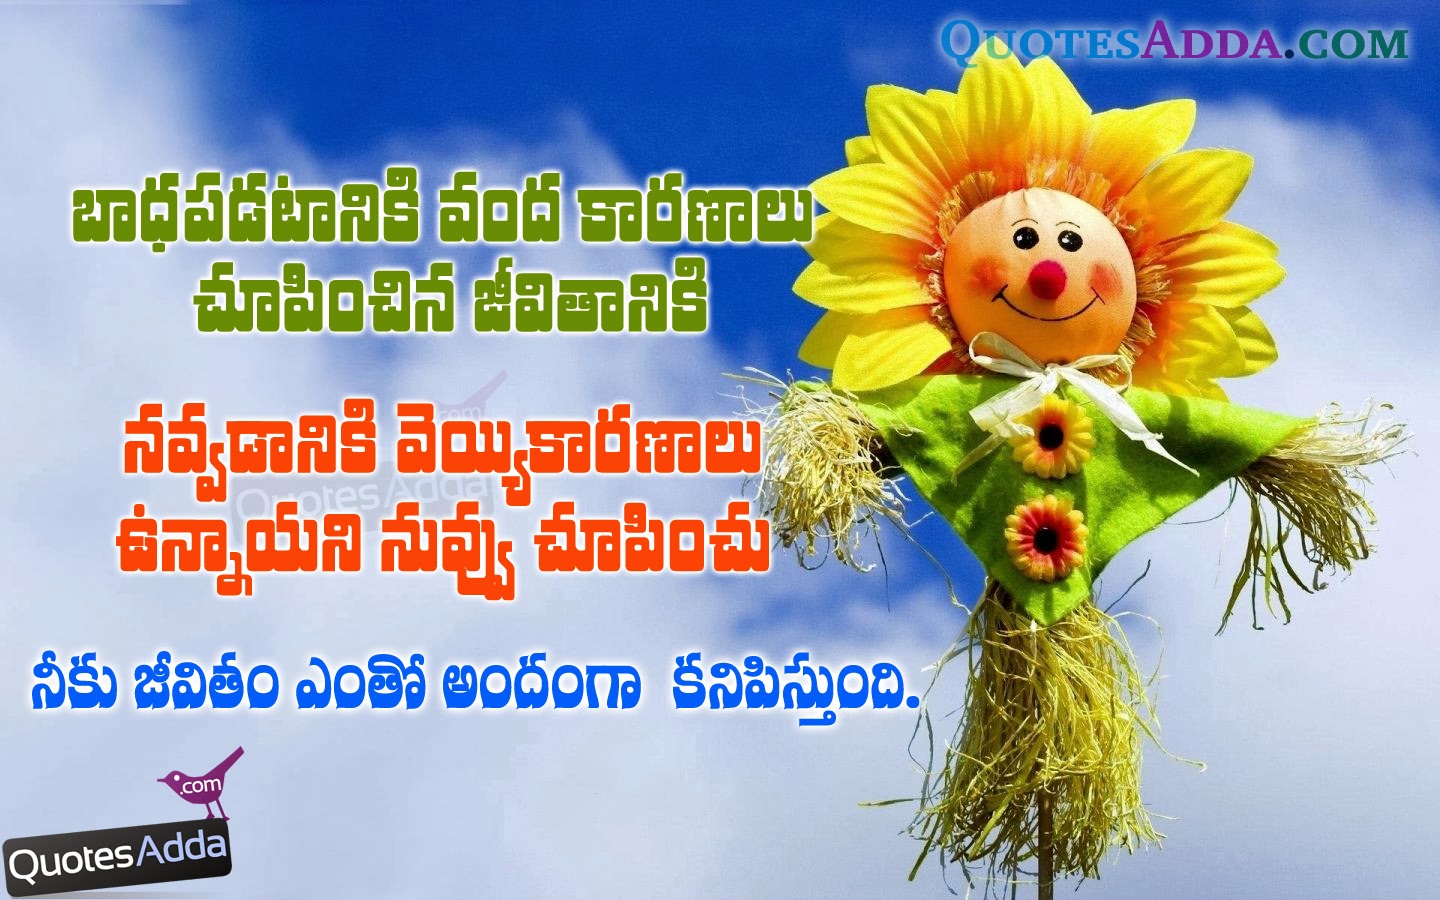 Life Quotes, Telugu Best Quotes , Beautiful Telugu Images, Happy Life ...